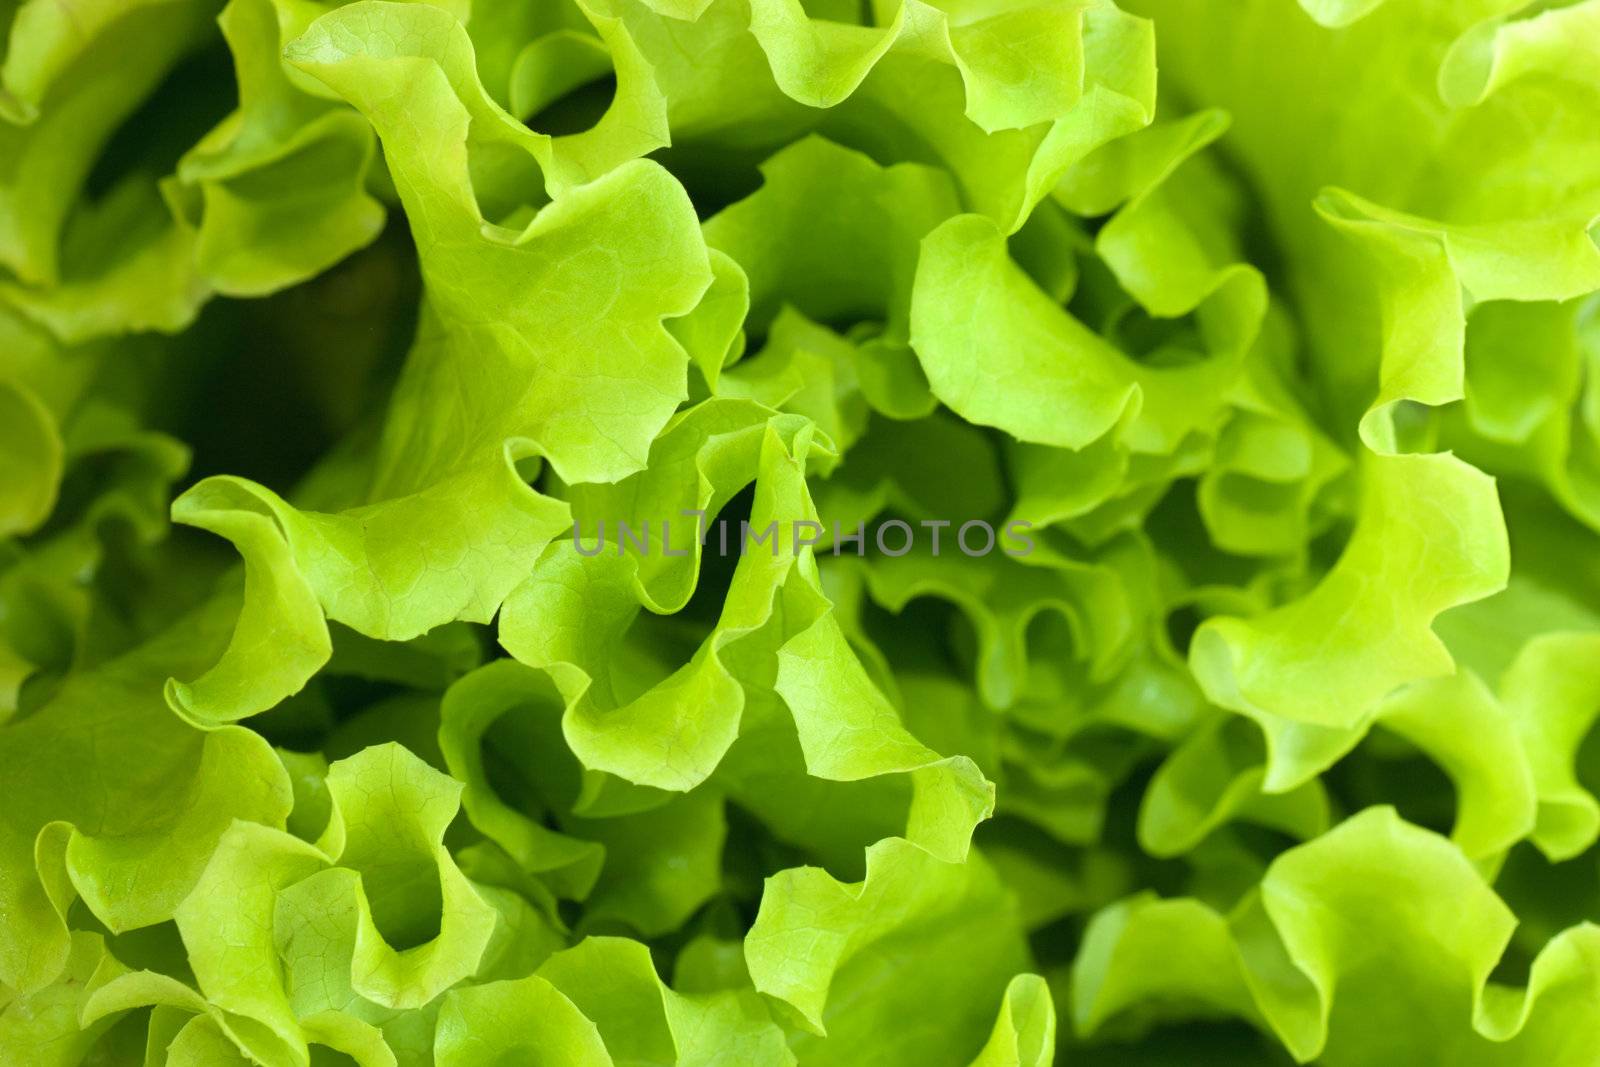 Macro view of fresh green juicy leaves of lettuce.